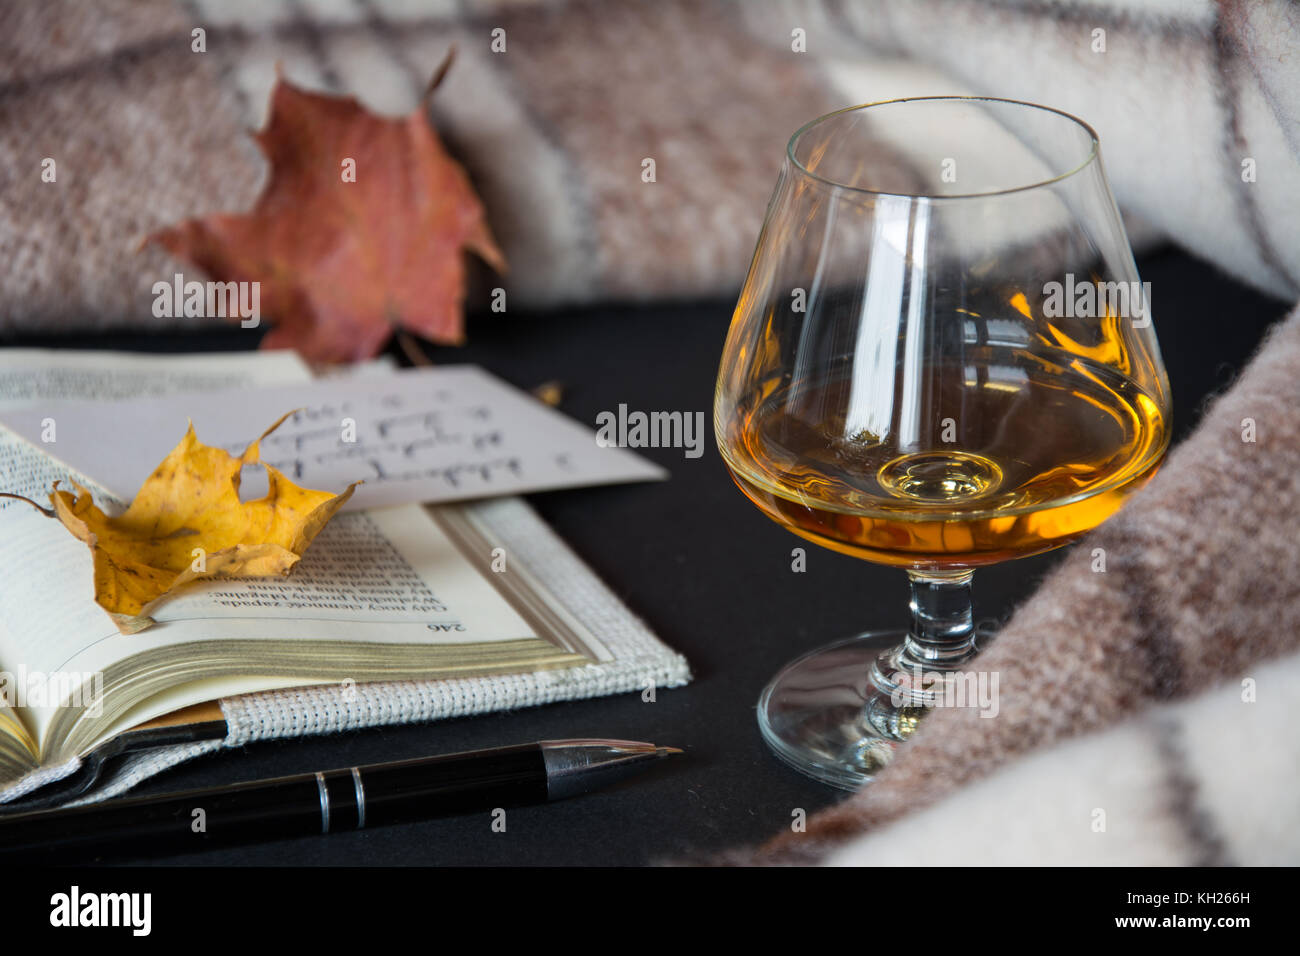 Un verre d'alcool ambré avec un livre ouvert, des feuilles sèches, un stylo-bille noir et couverture chaude en arrière-plan Banque D'Images